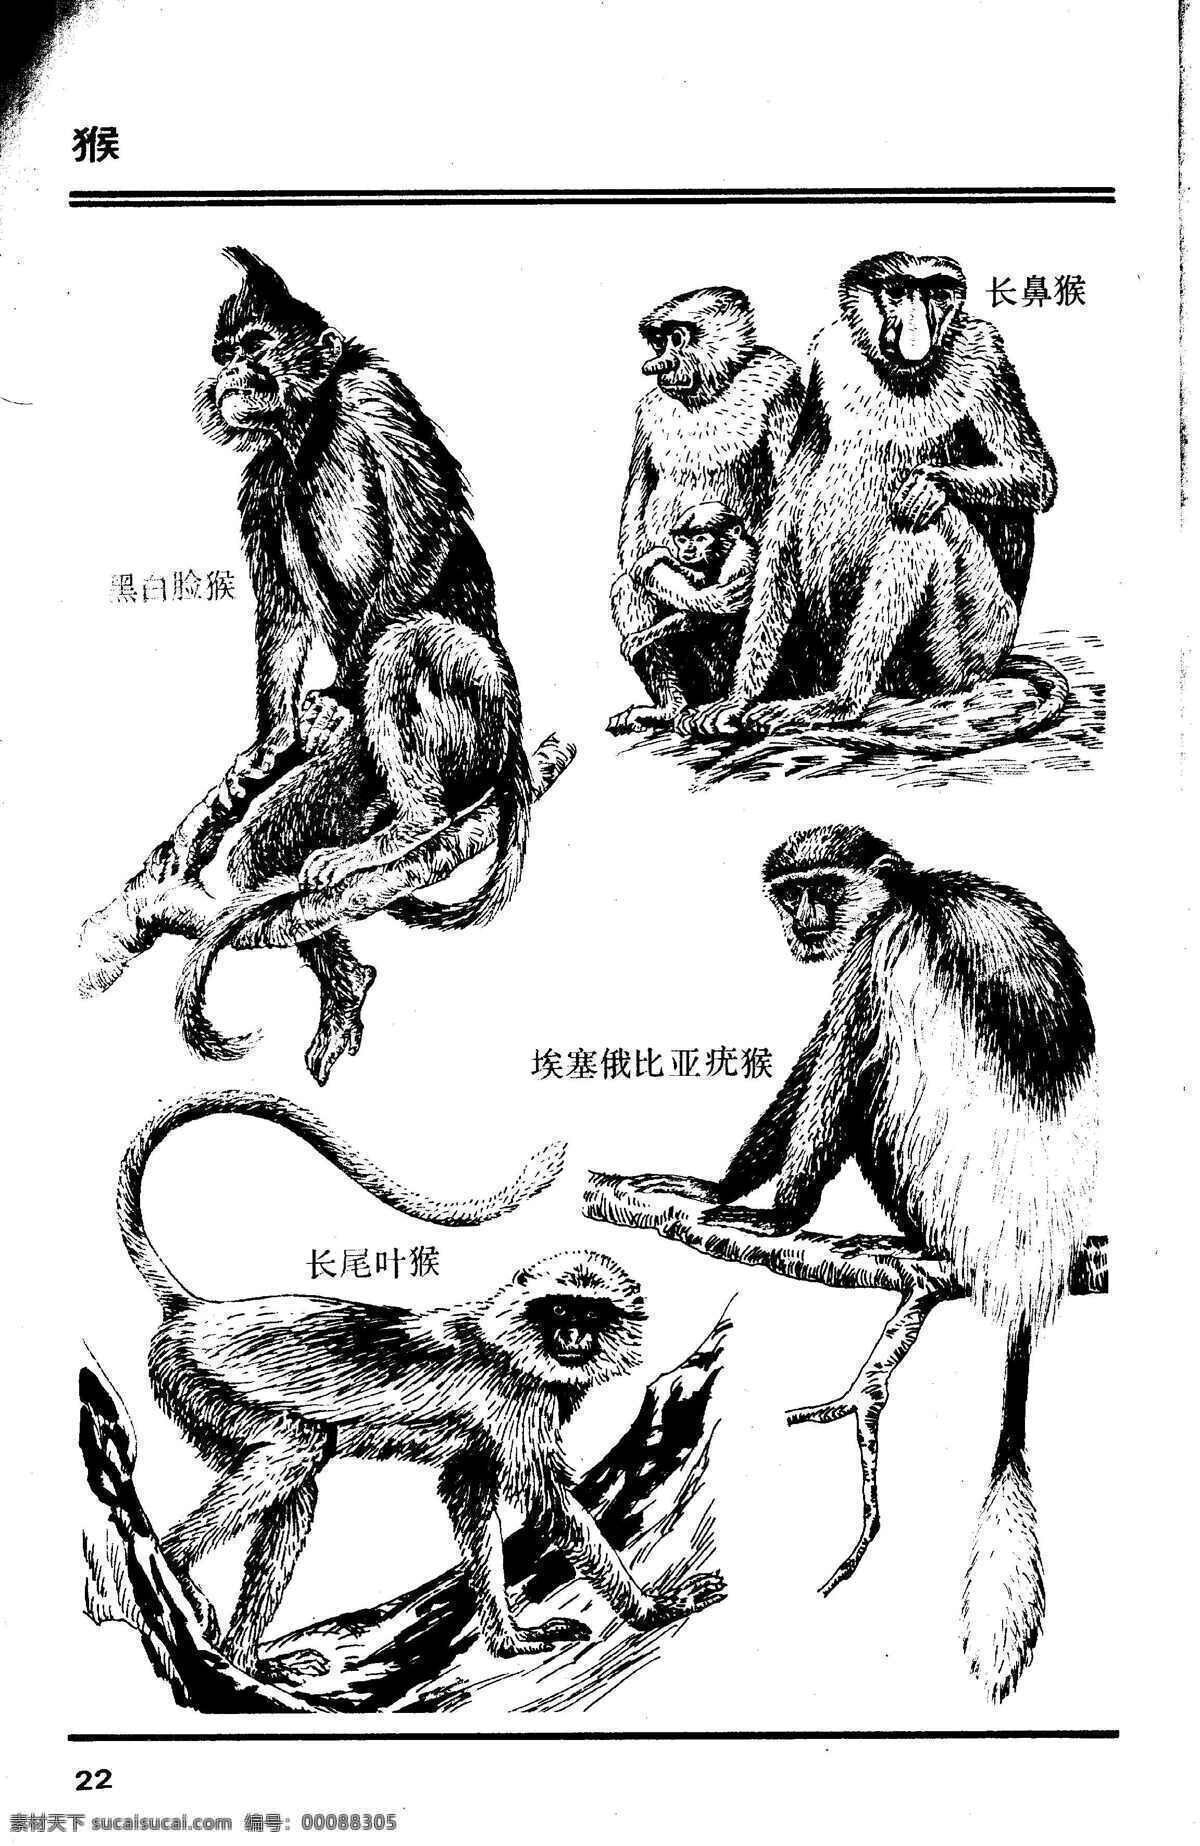 百兽图22 猴 百兽 兽 家禽 猛兽 动物 白描 线描 绘画 美术 禽兽 野生动物 画兽谱 猴子 生物世界 设计图库